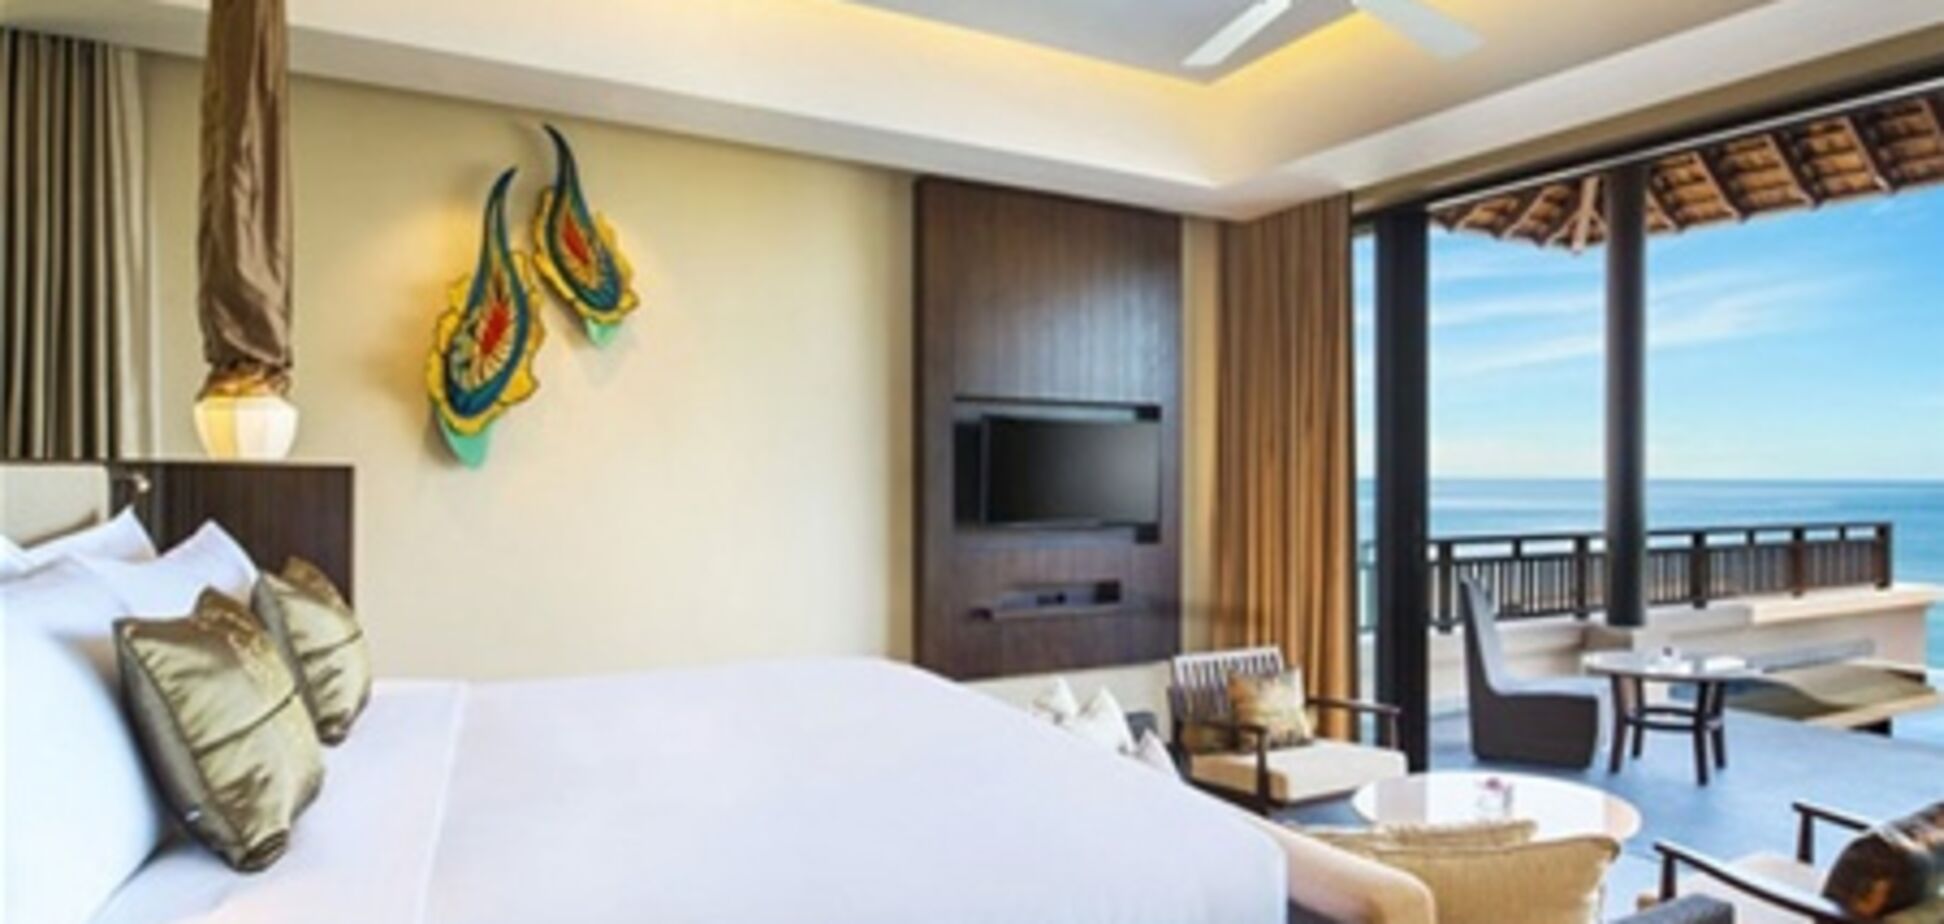 Роскошный отель открылся в Таиланде